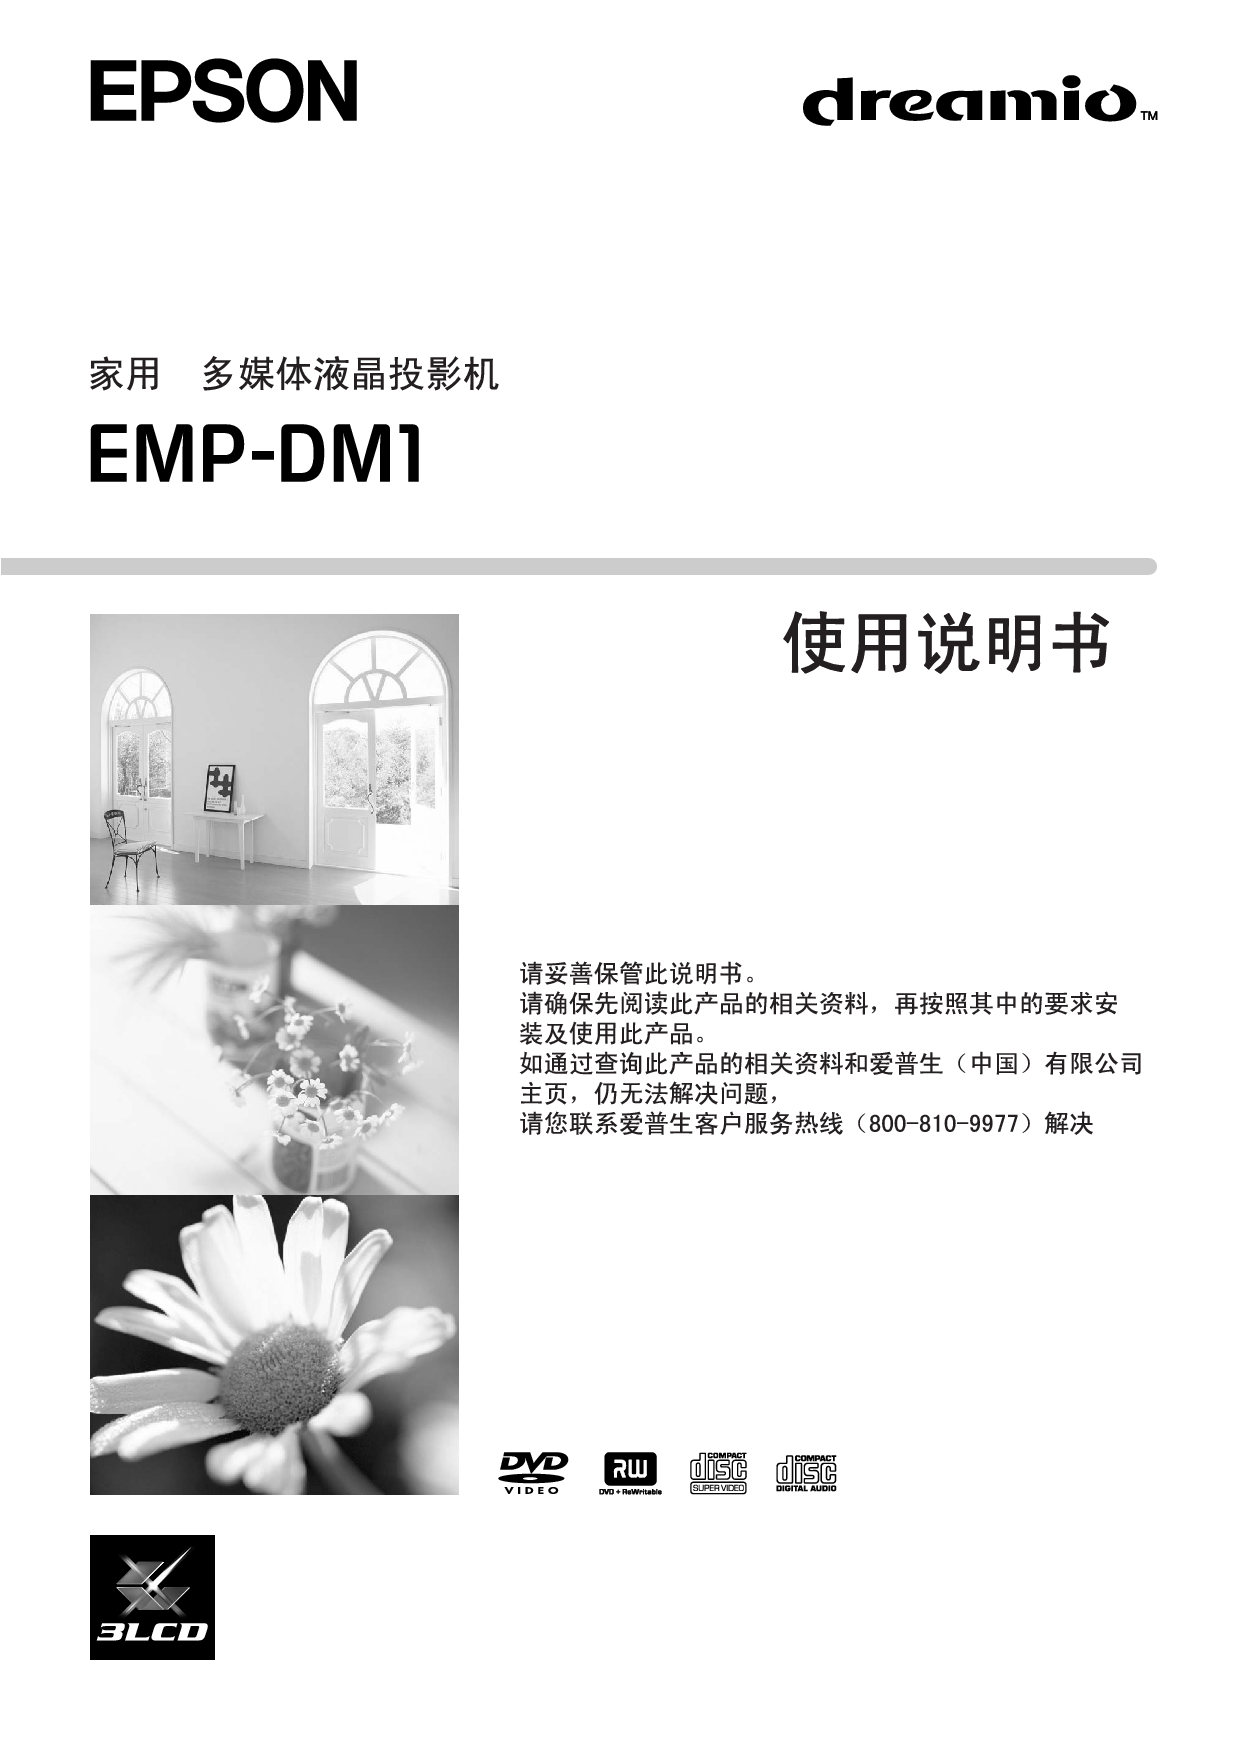 爱普生 Epson EMP-DM1 使用说明书 封面